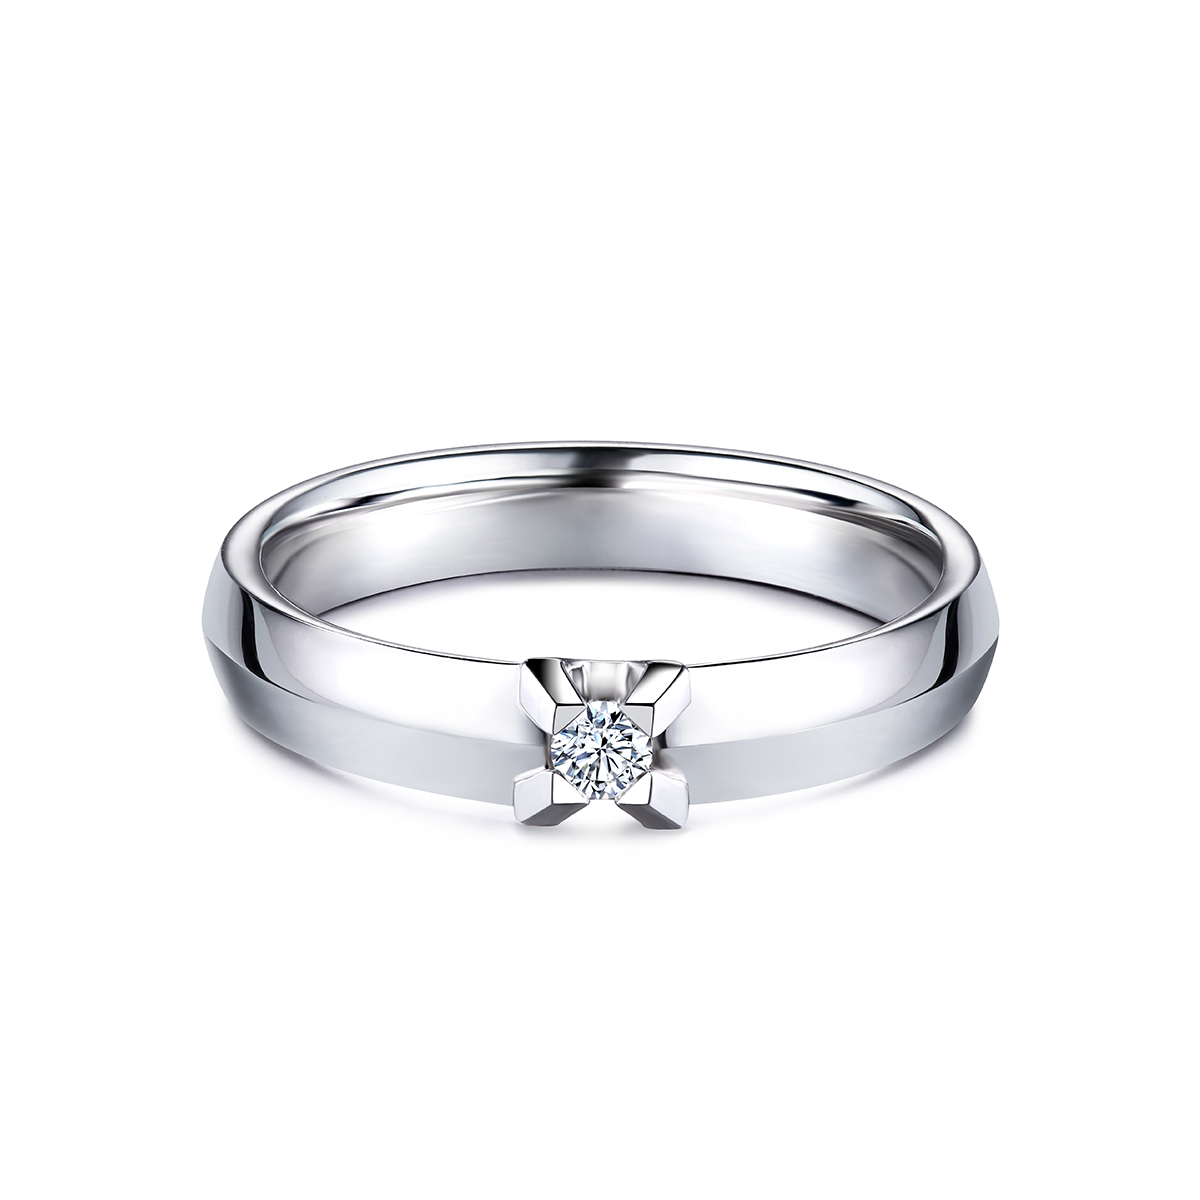 六福珠寶18K金戒指 - “Hexicon”18K金(白色)劍脊戒臂鑽石戒指